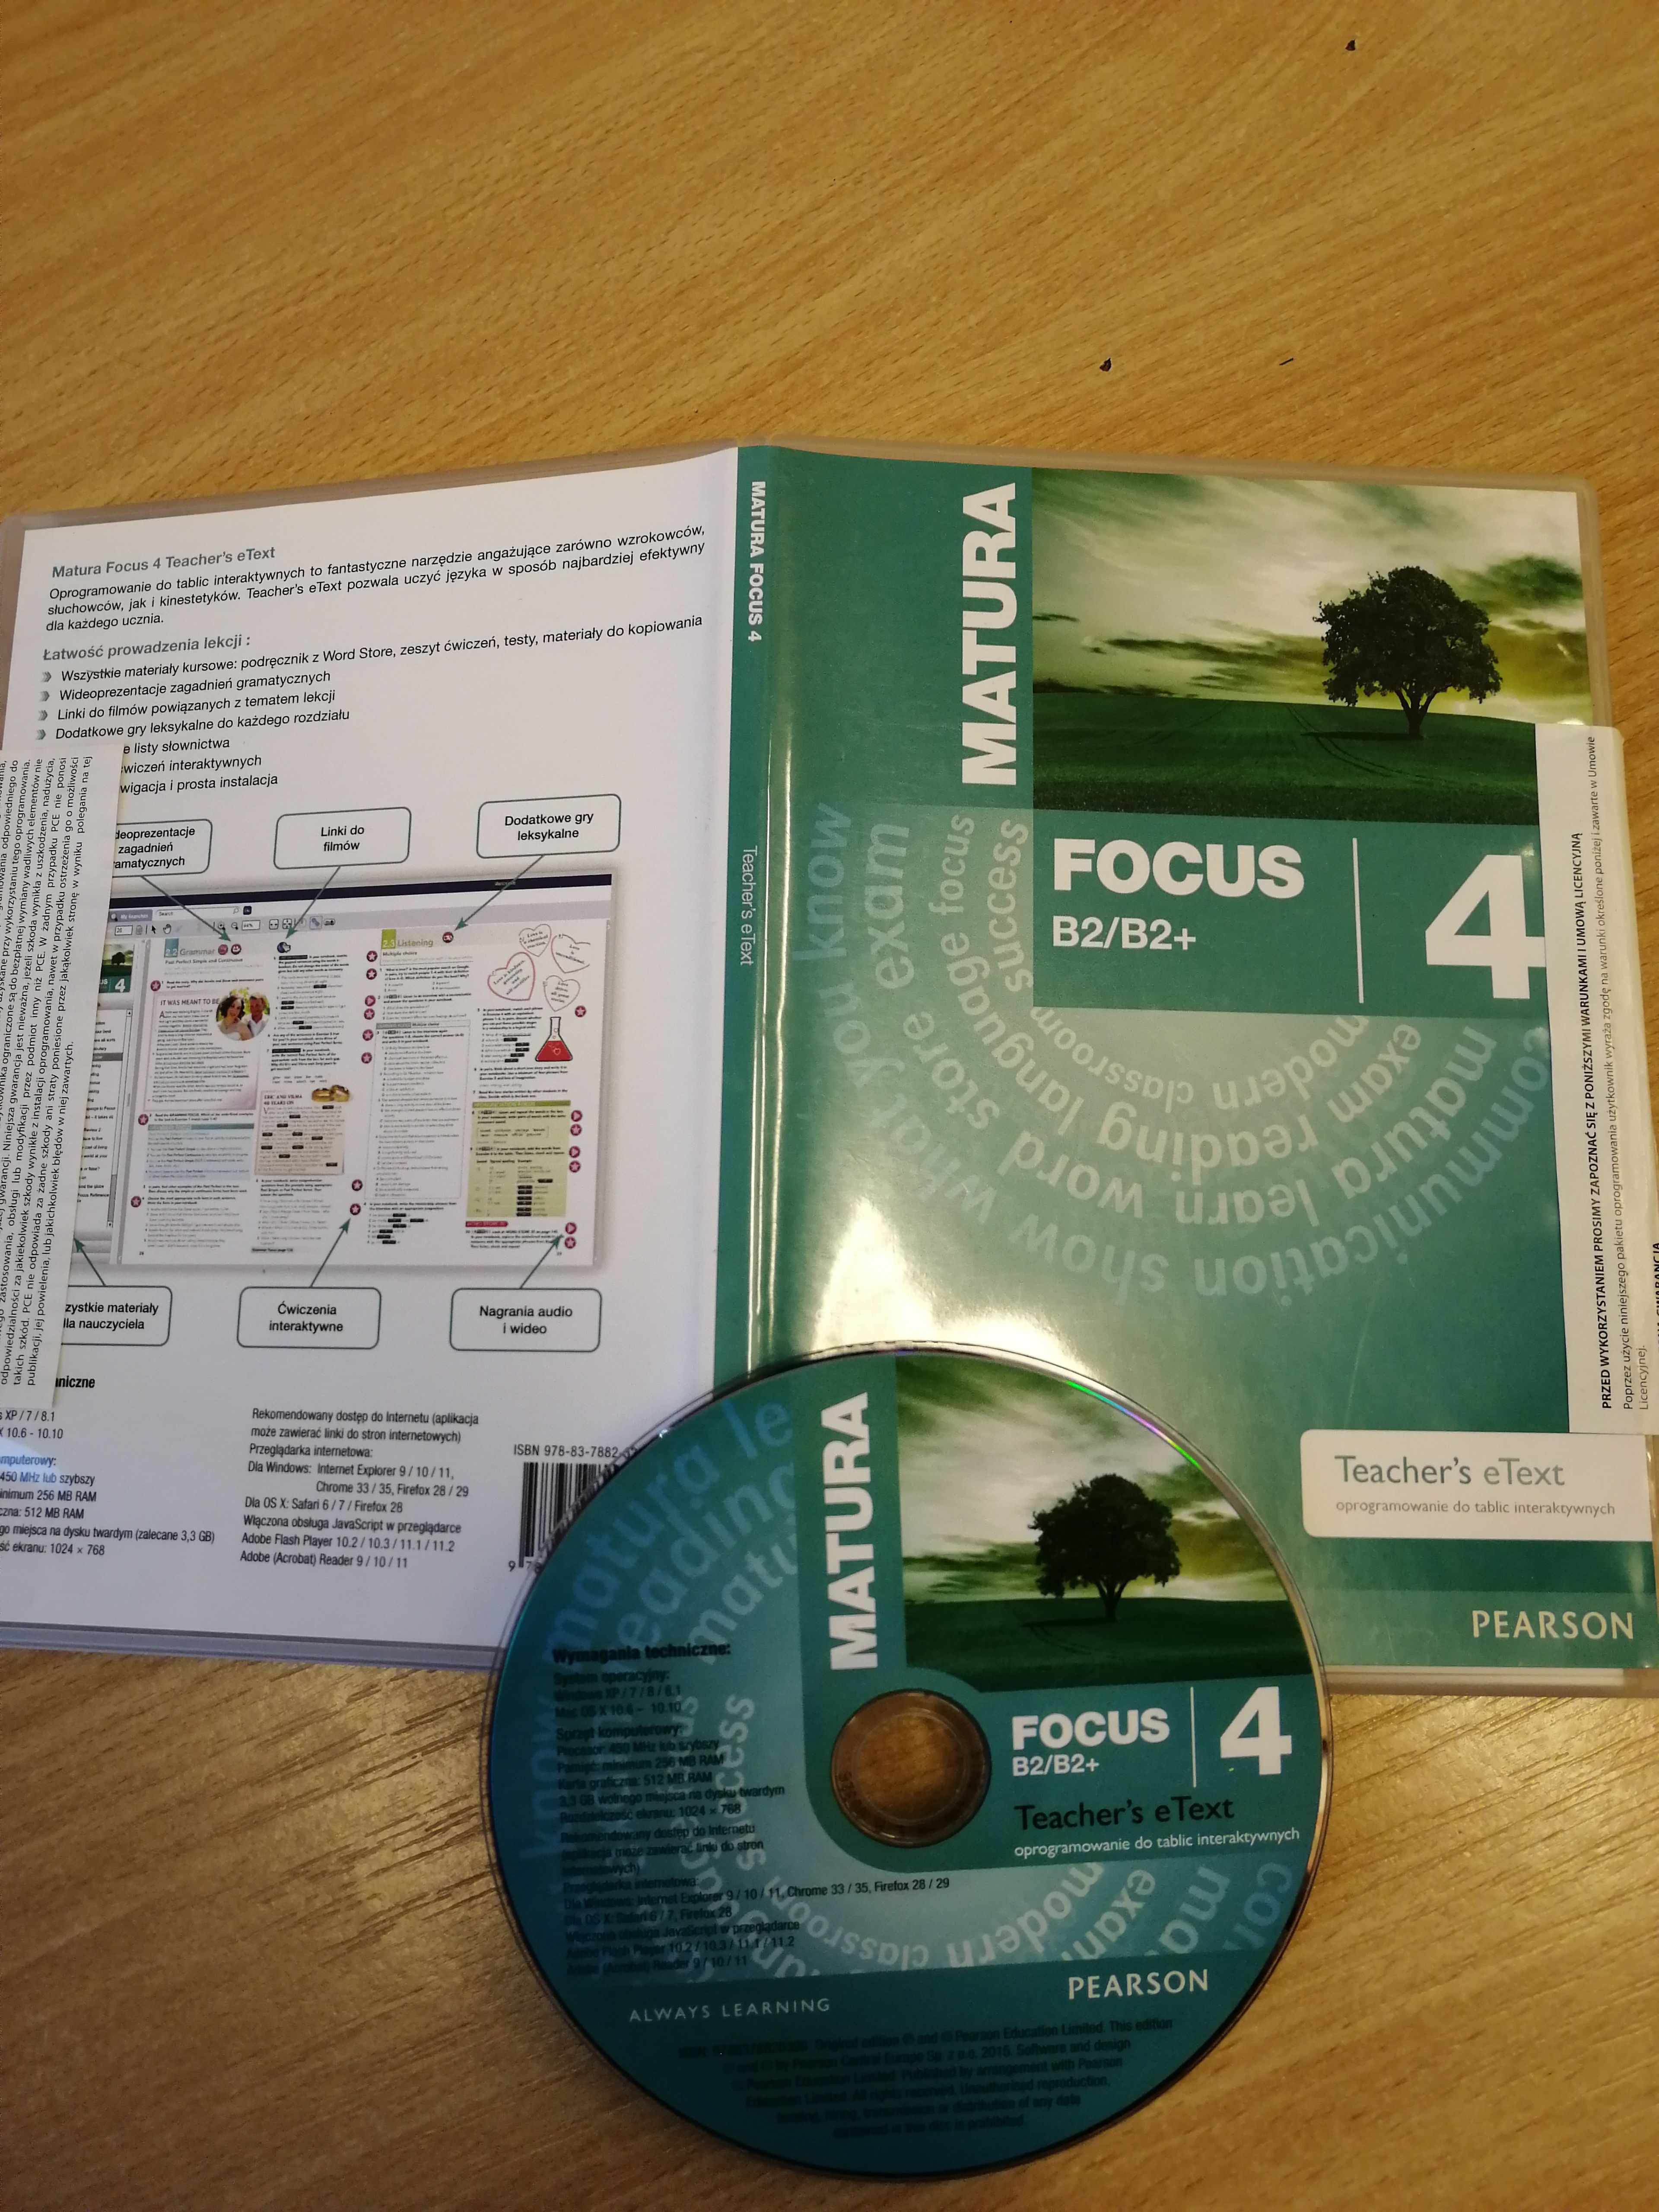 Okładka książki: Matura Focus 4 B2.  Na okładce położona jest płyta CD o takim samym tytule. 